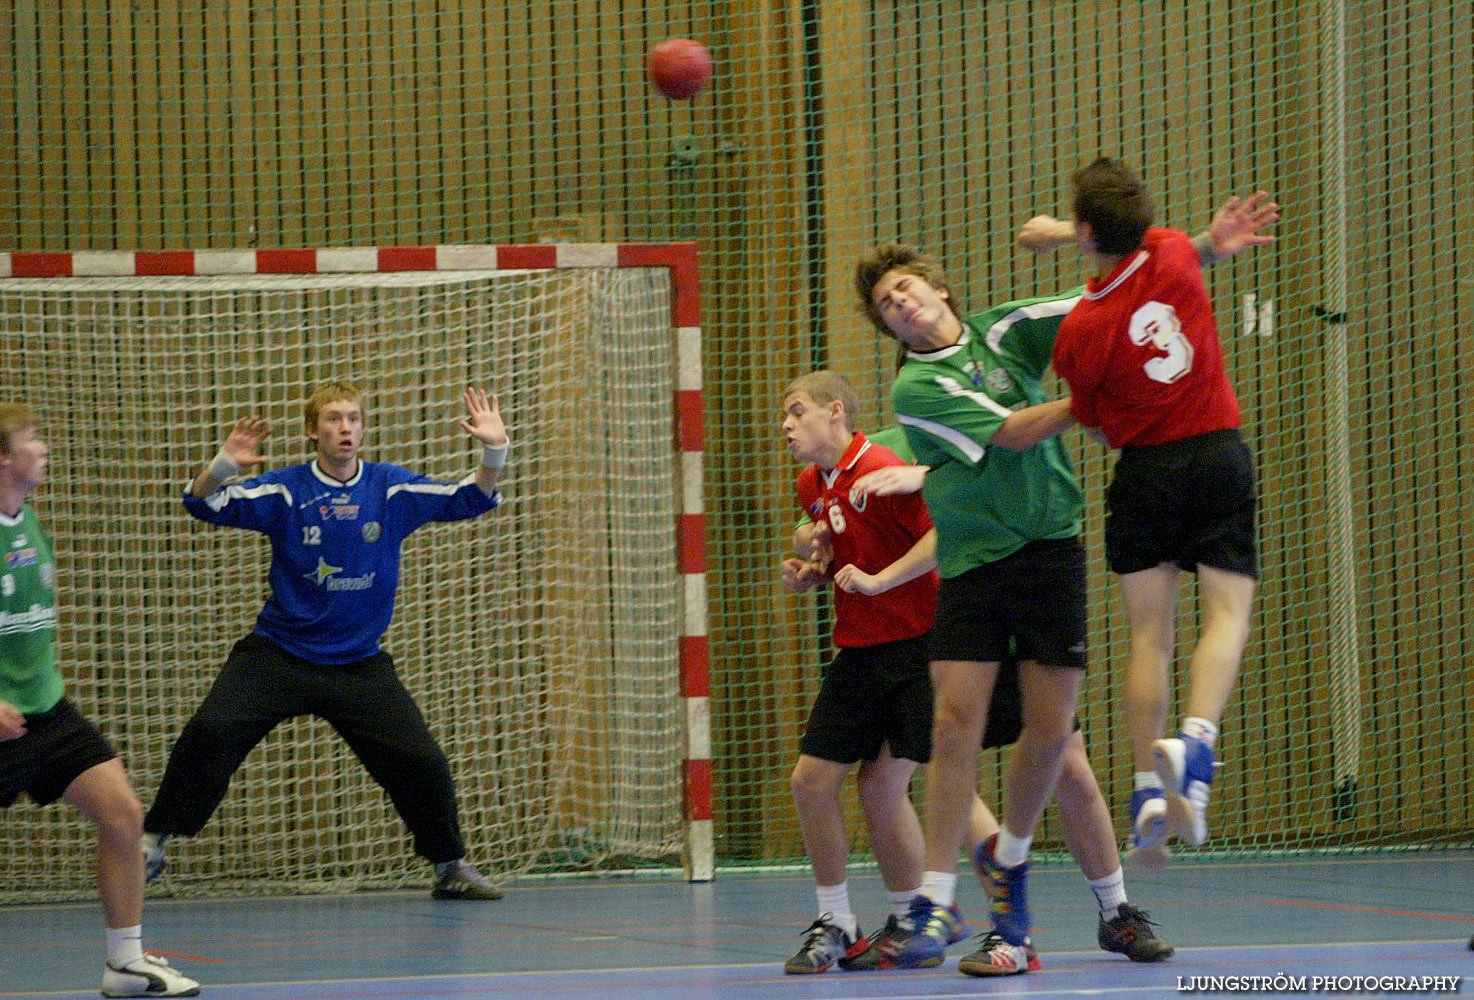 Skadevi Handbollscup 2005 Fredag,mix,Arena Skövde,Skövde,Sverige,Handboll,,2005,141305